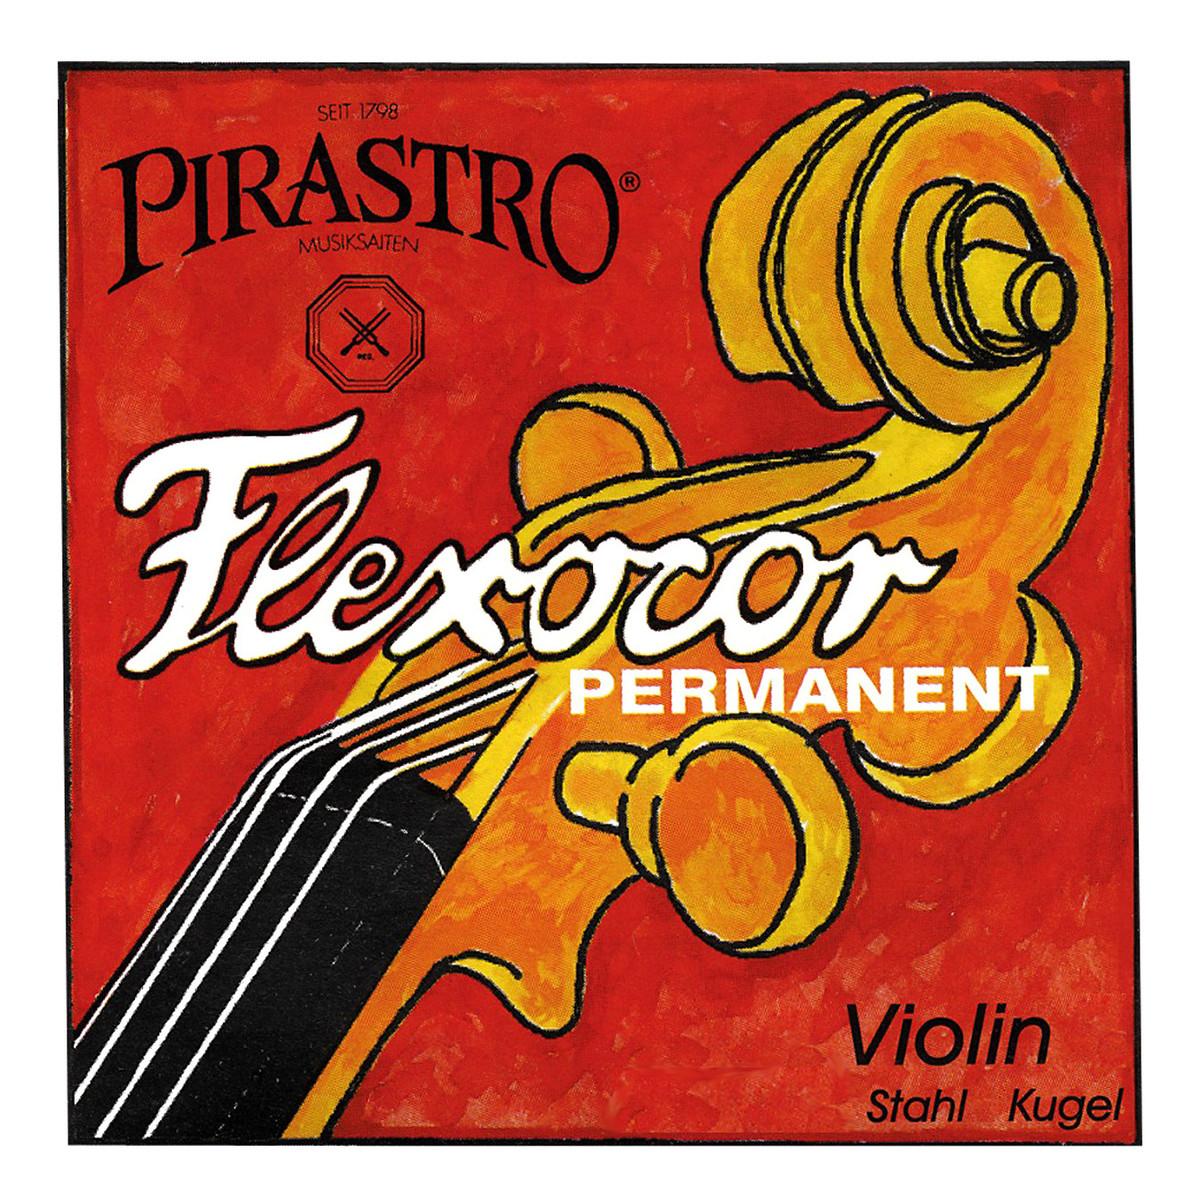 Струны для скрипки PIRASTRO 316020 Flexcor permanent